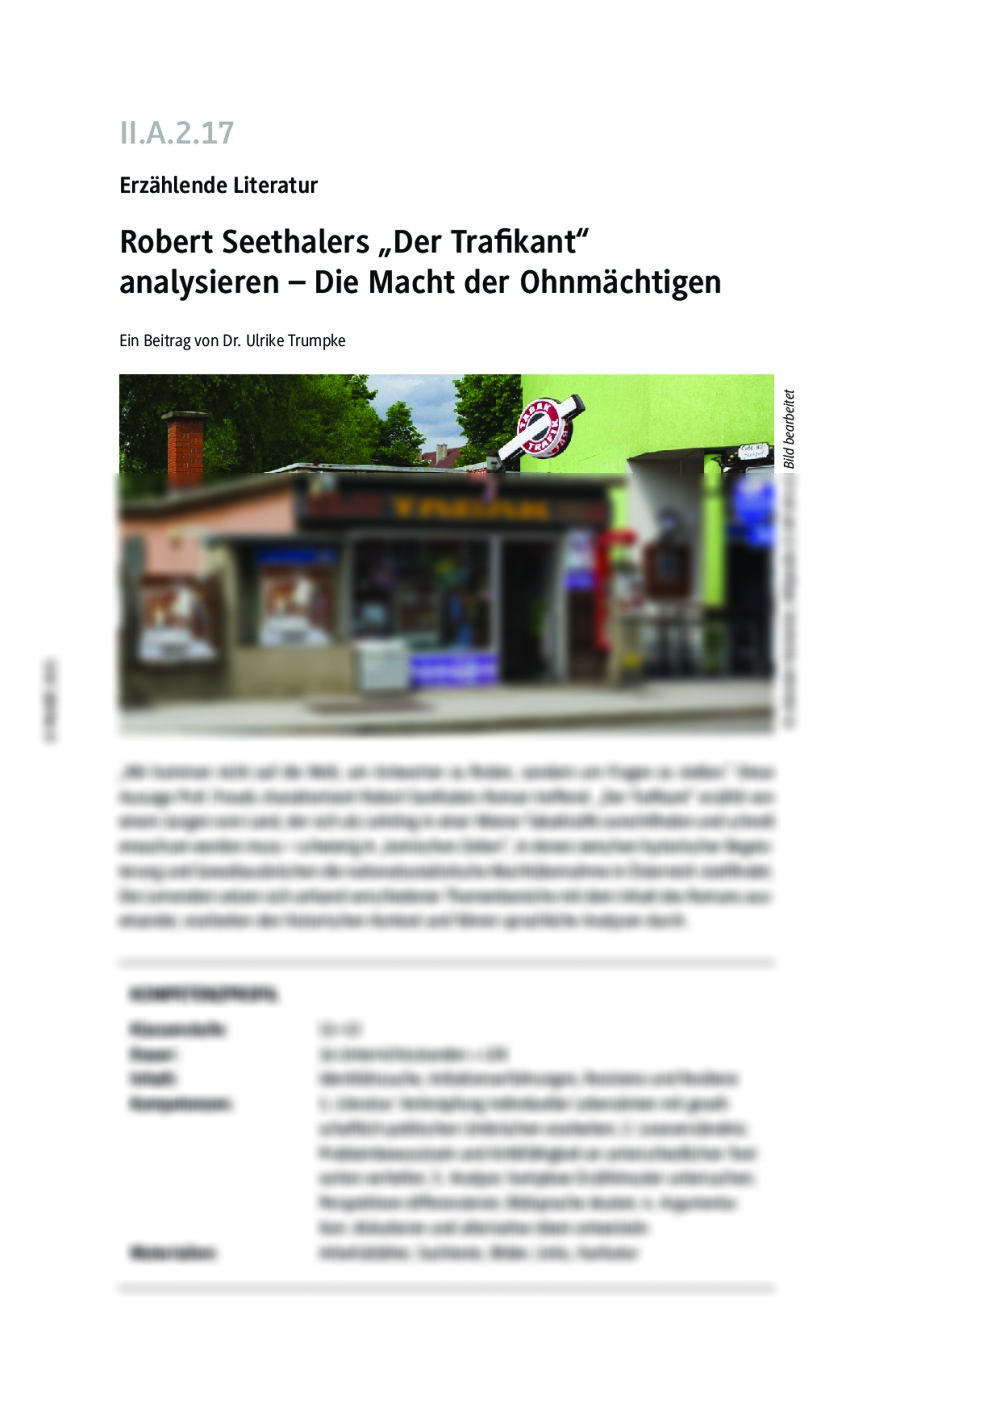 Robert Seethalers "Der Trafikant" analysieren - Seite 1